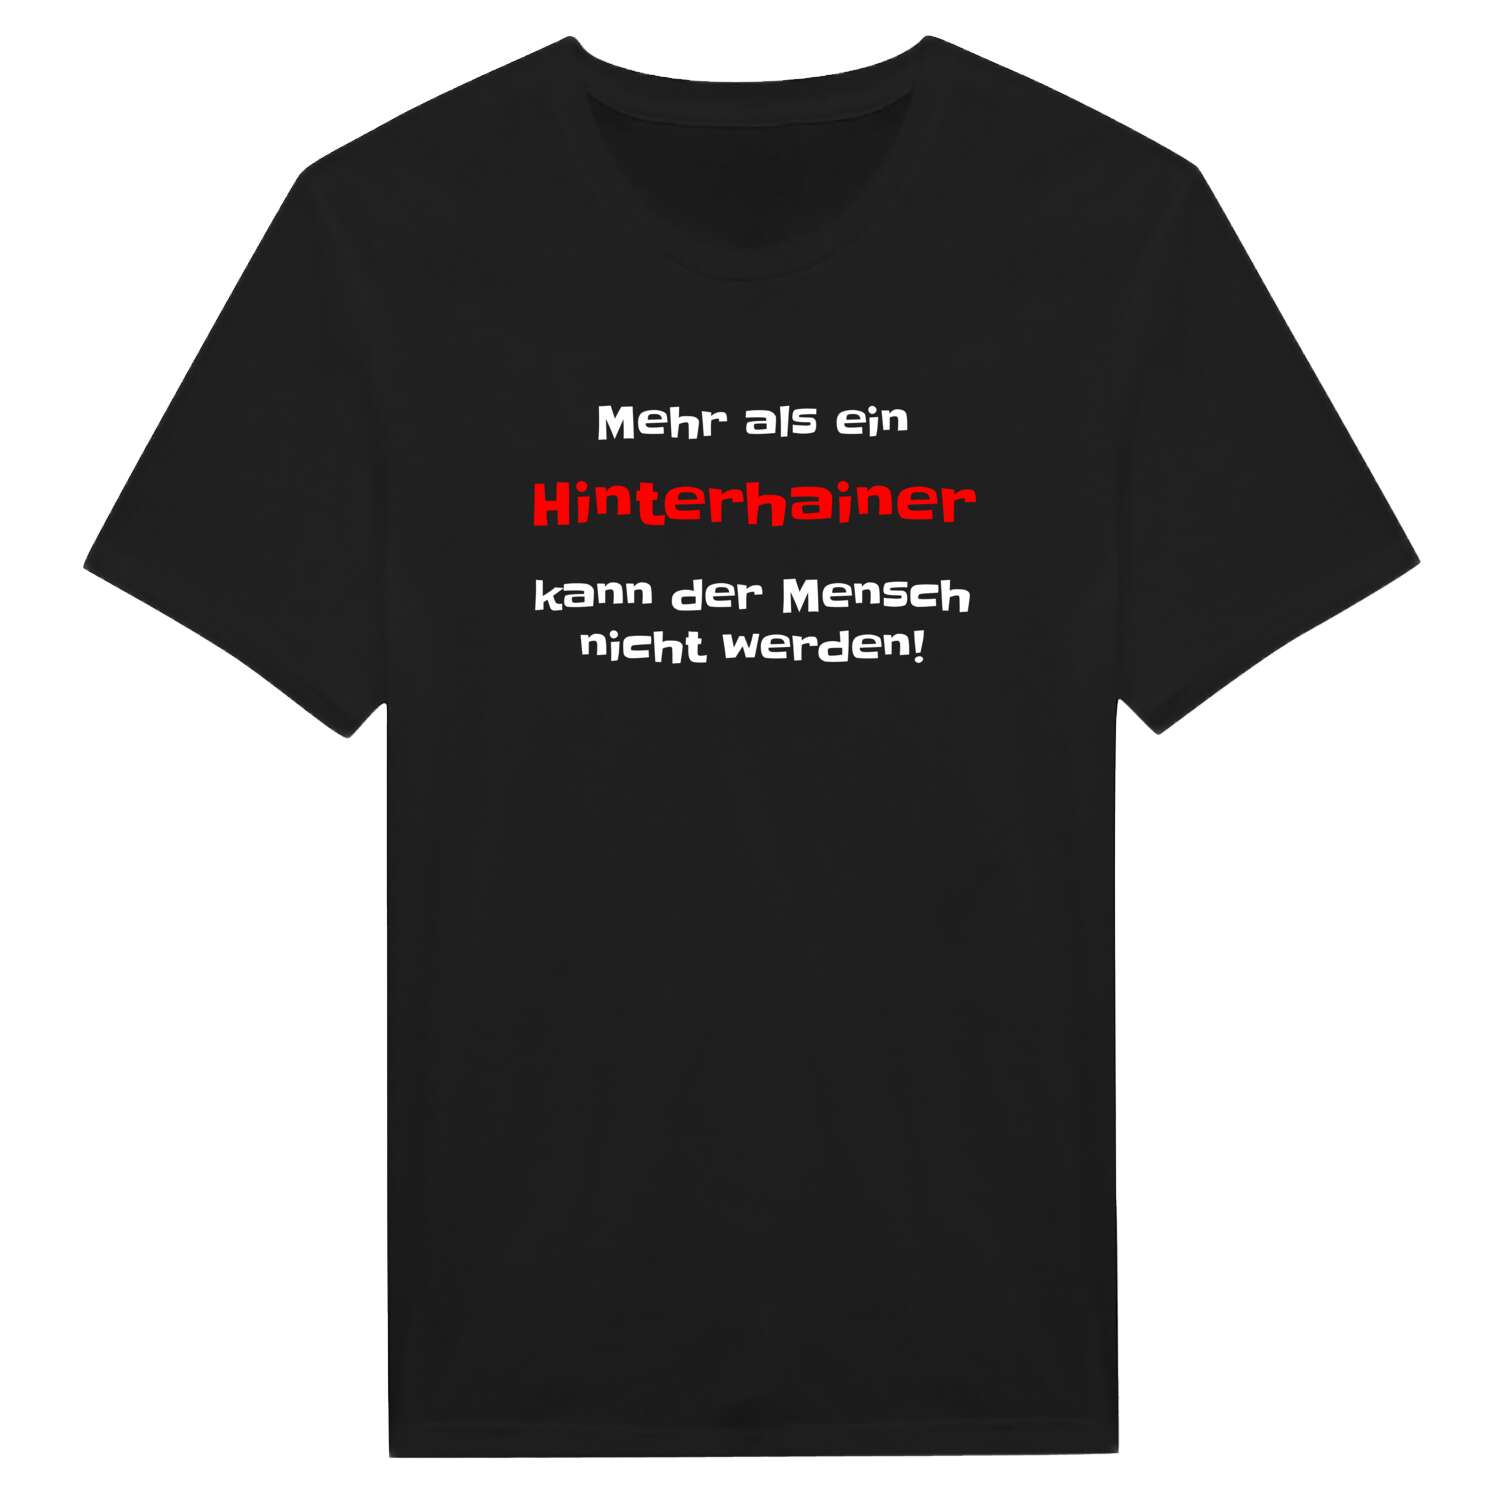 Hinterhain T-Shirt »Mehr als ein«